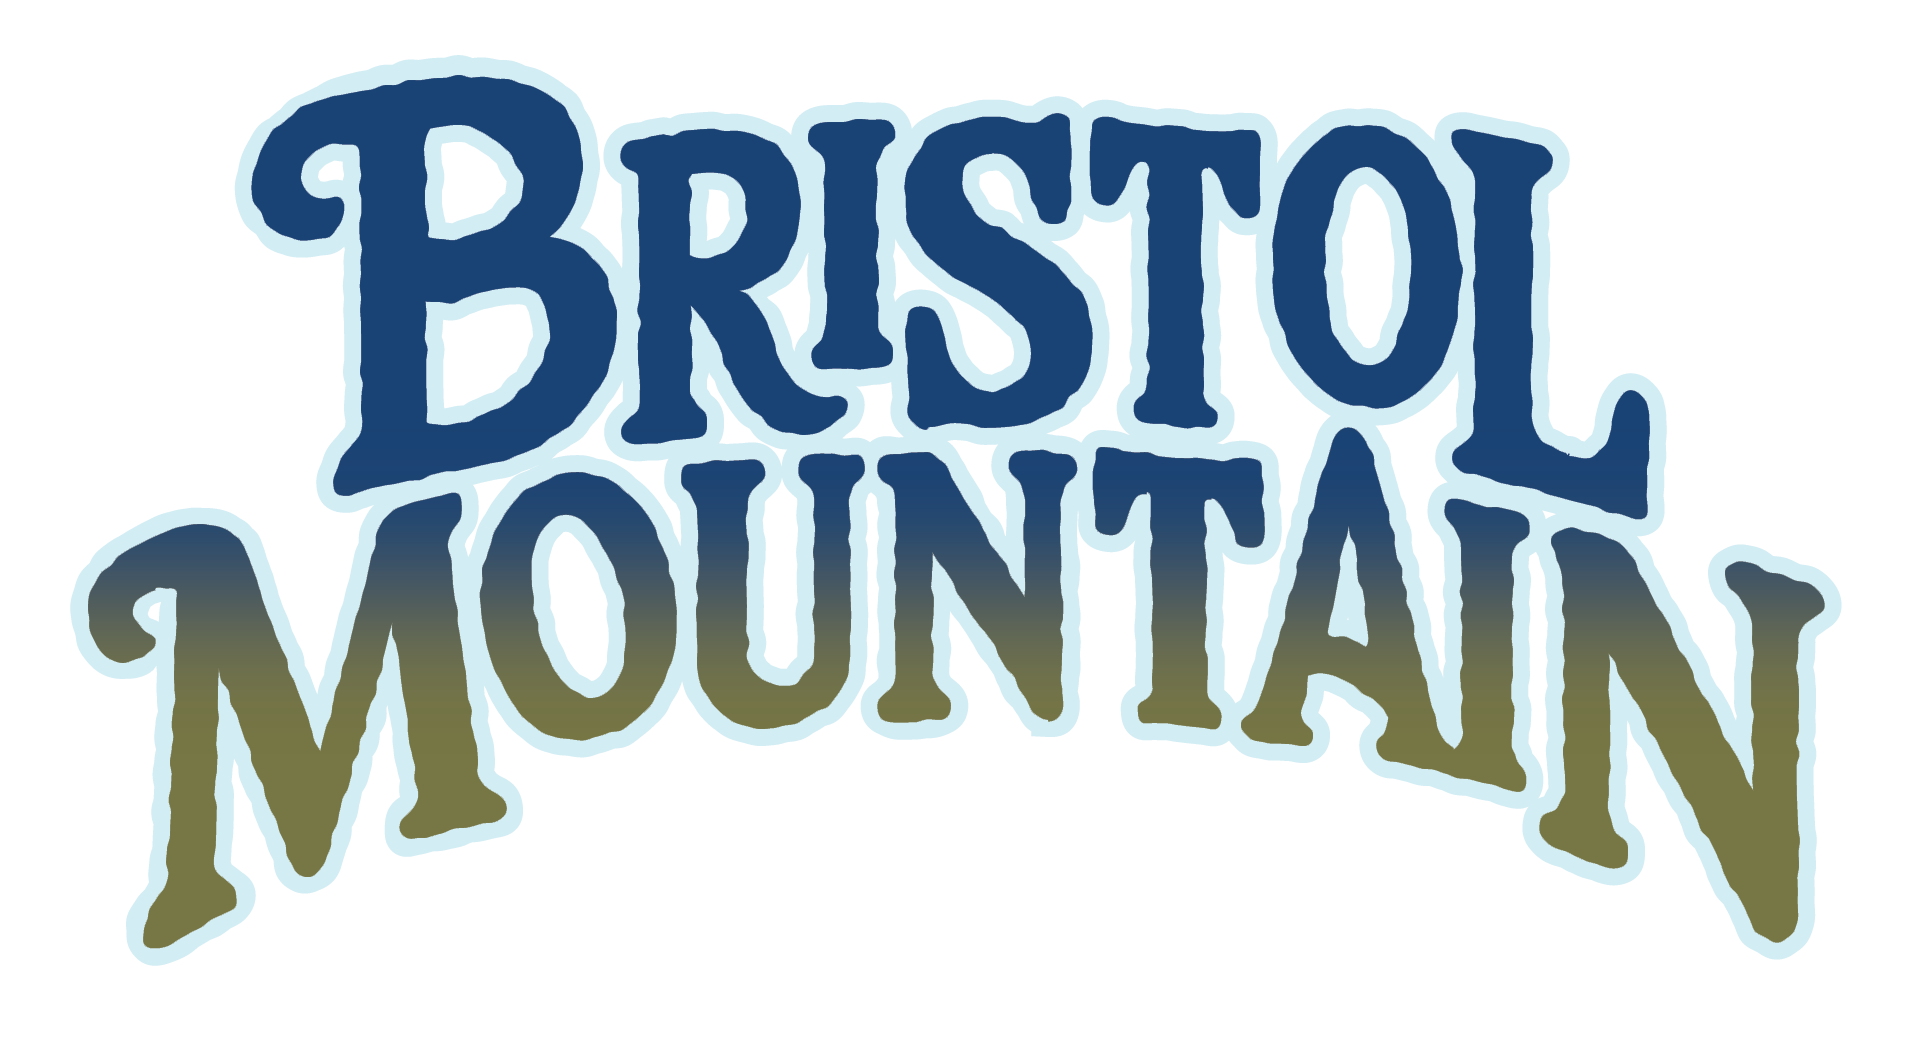 Bristol Mountain Fall Festival